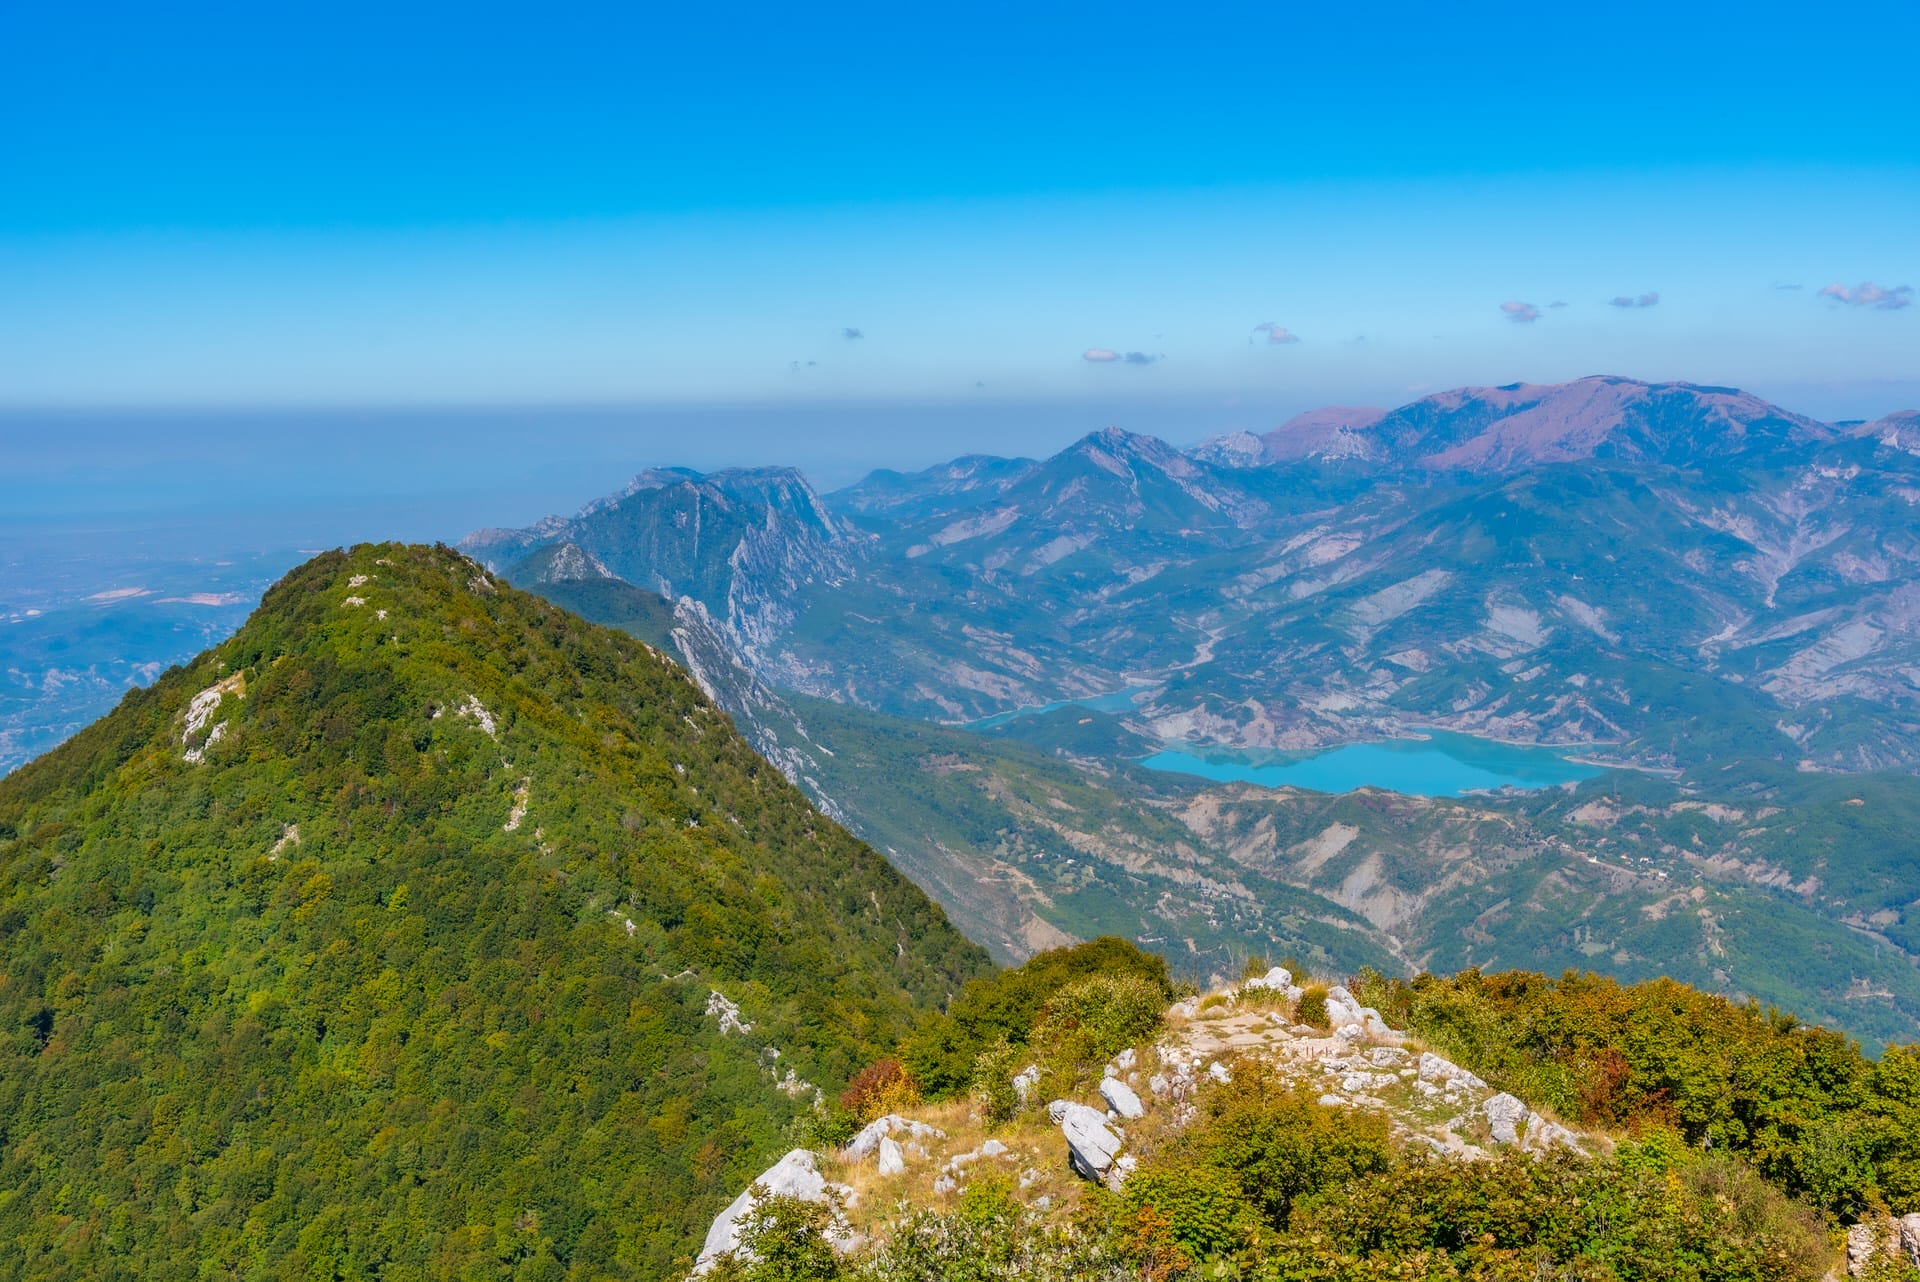 Mount Tujanit and Bovilla lake at Dajti national park in Albania